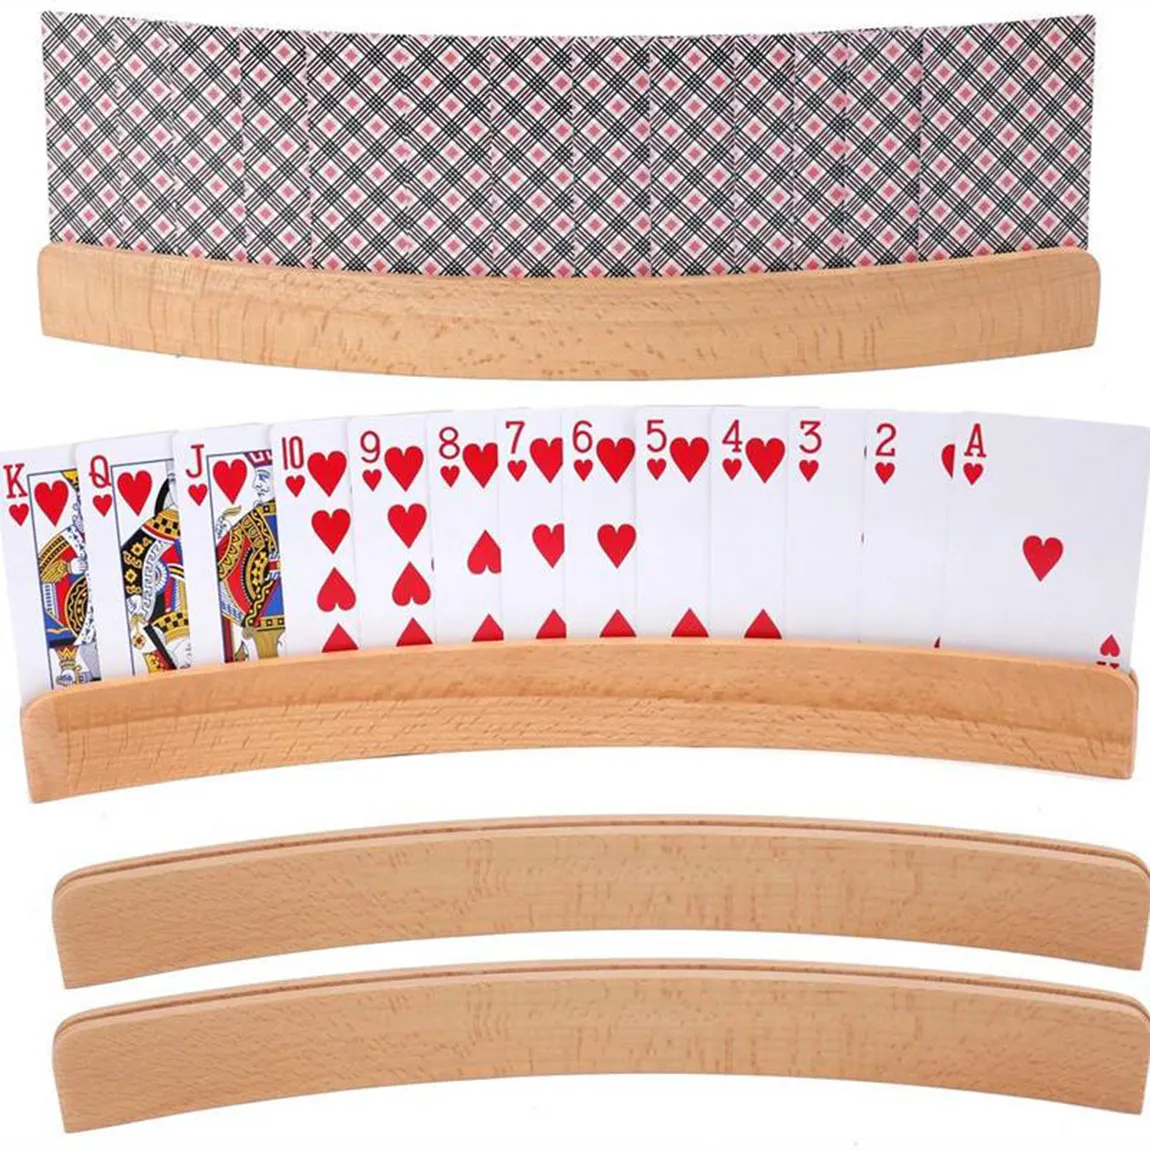 Wooden Beech Poker Holder Table Poker Holder/card holder for playing cards